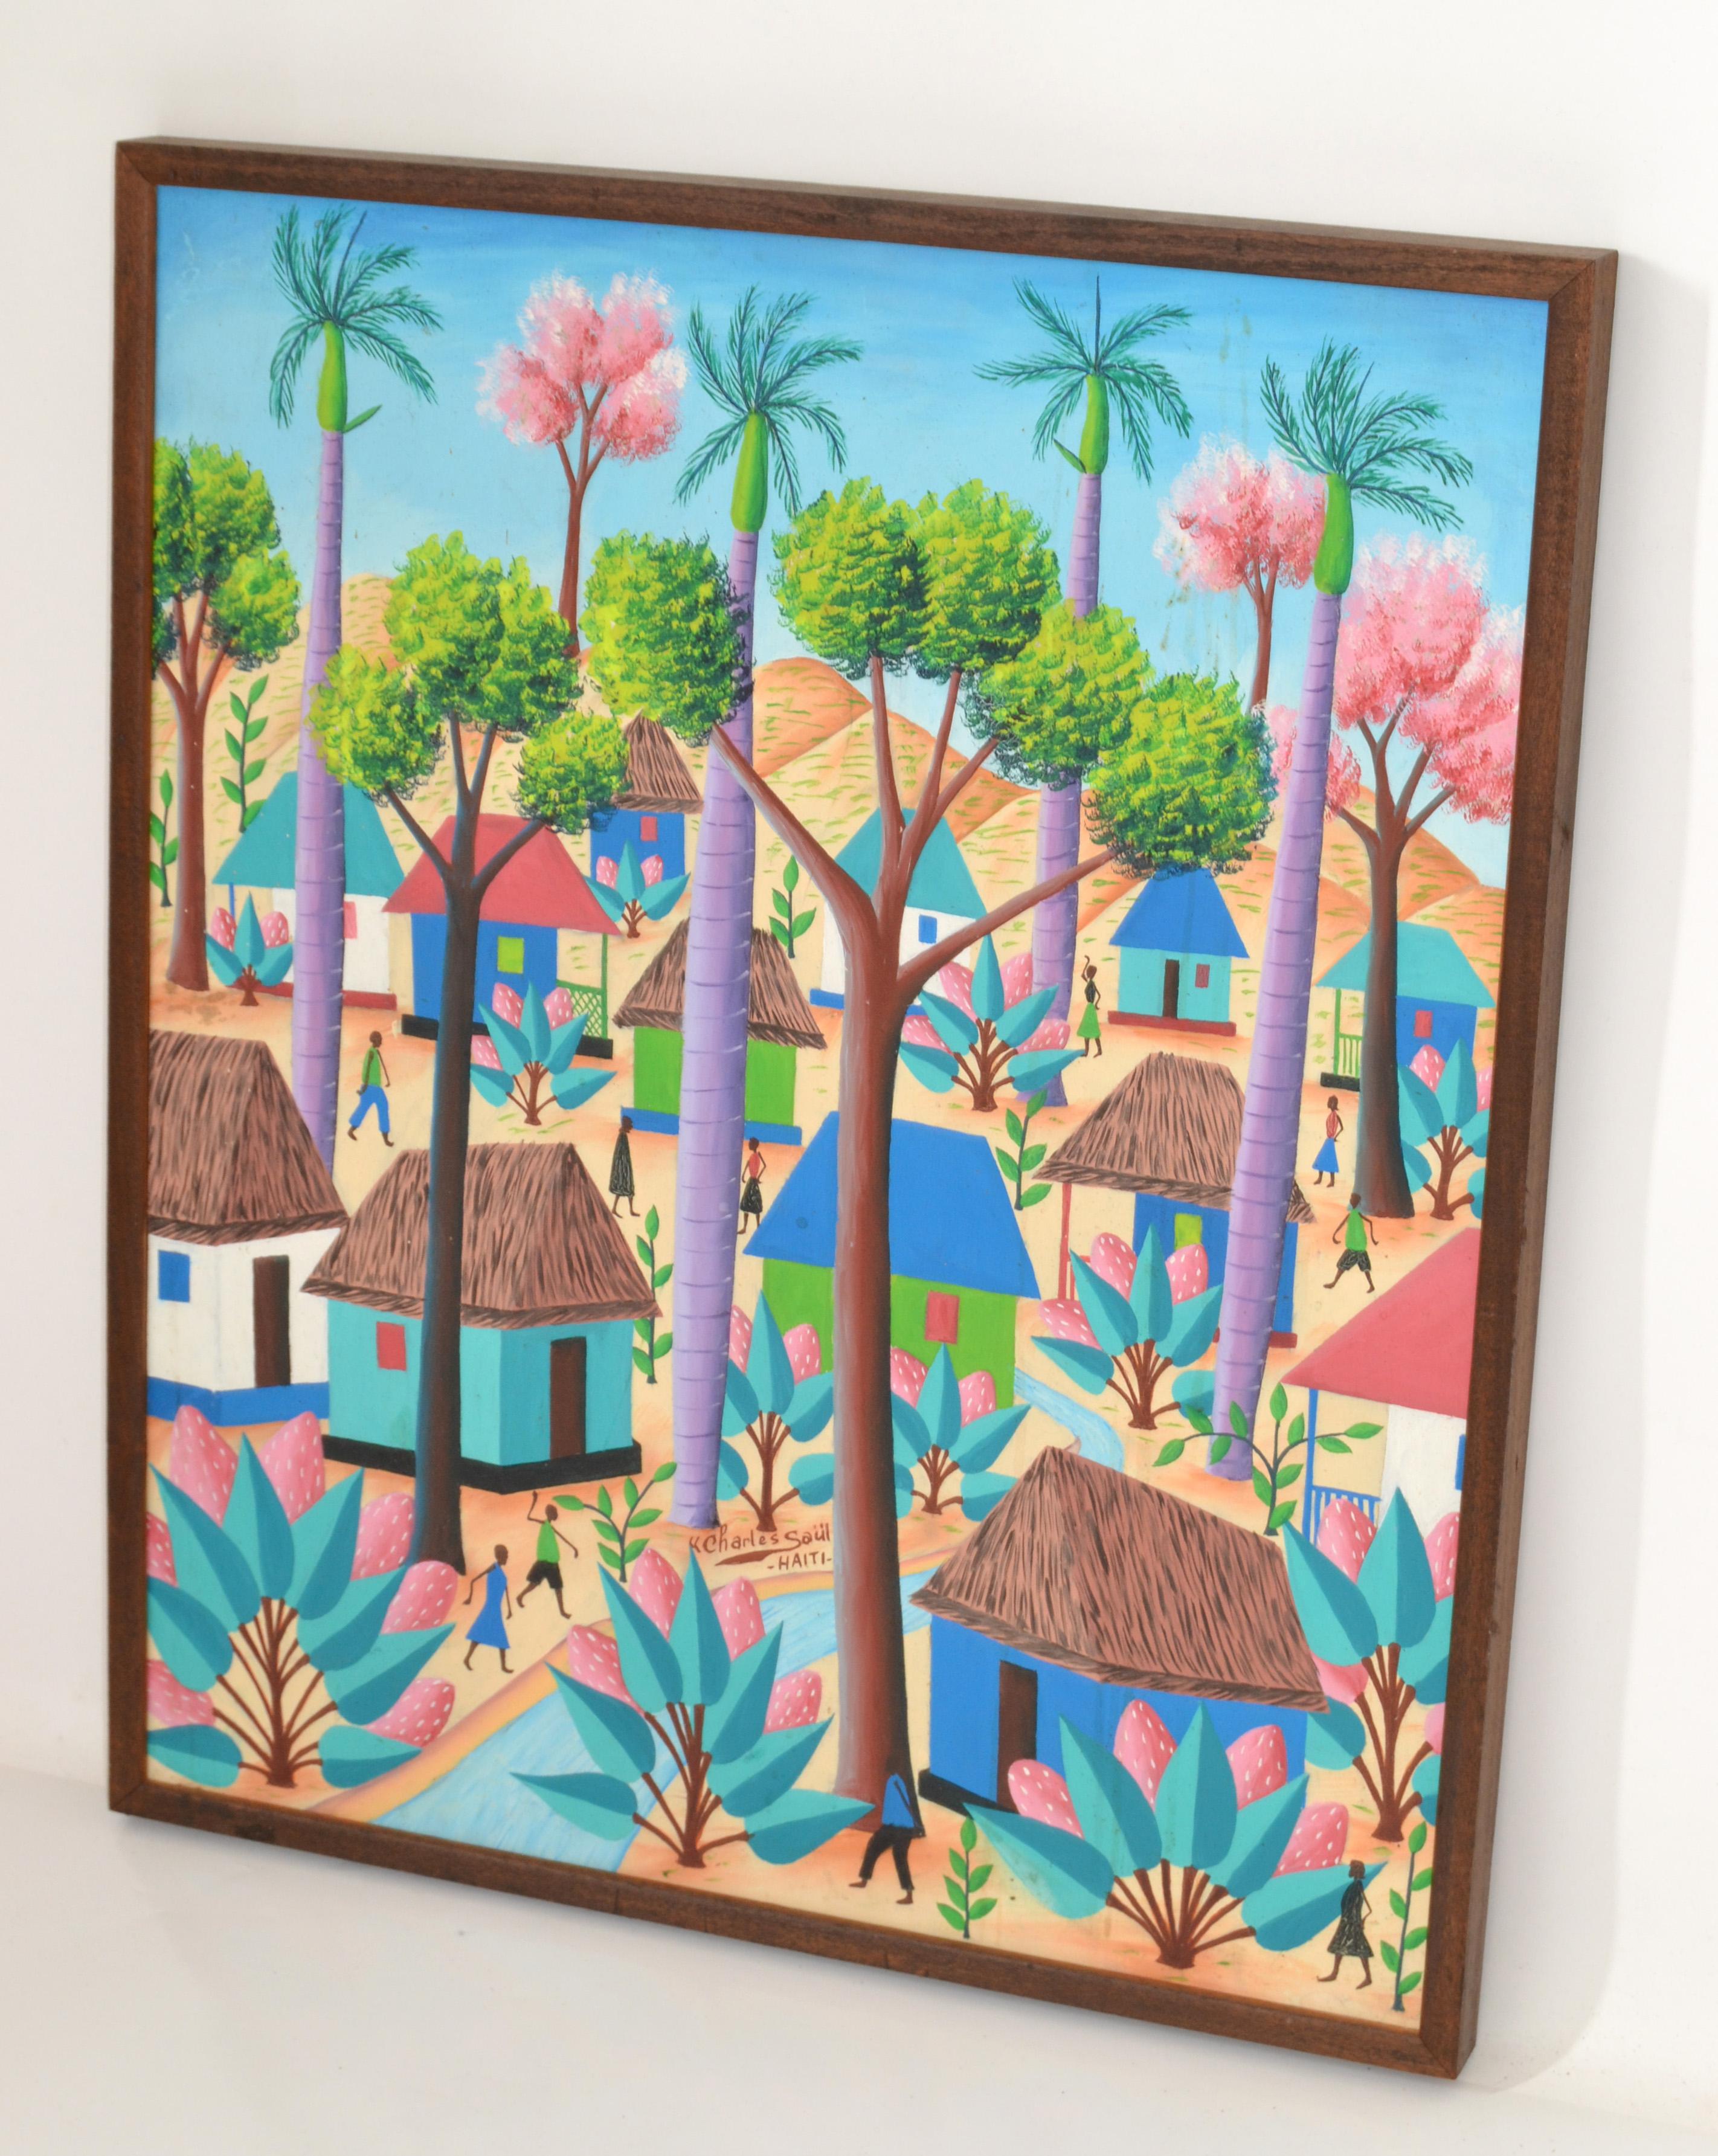 Une peinture originale encadrée à l'acrylique sur toile d'une scène de village haïtien avec des gens qui vont et viennent, des huttes, et de grands feuillages et palmiers. 
Signé par Charles Saül (Haïtien, 1943 - ), et fabriqué en Haïti dans les